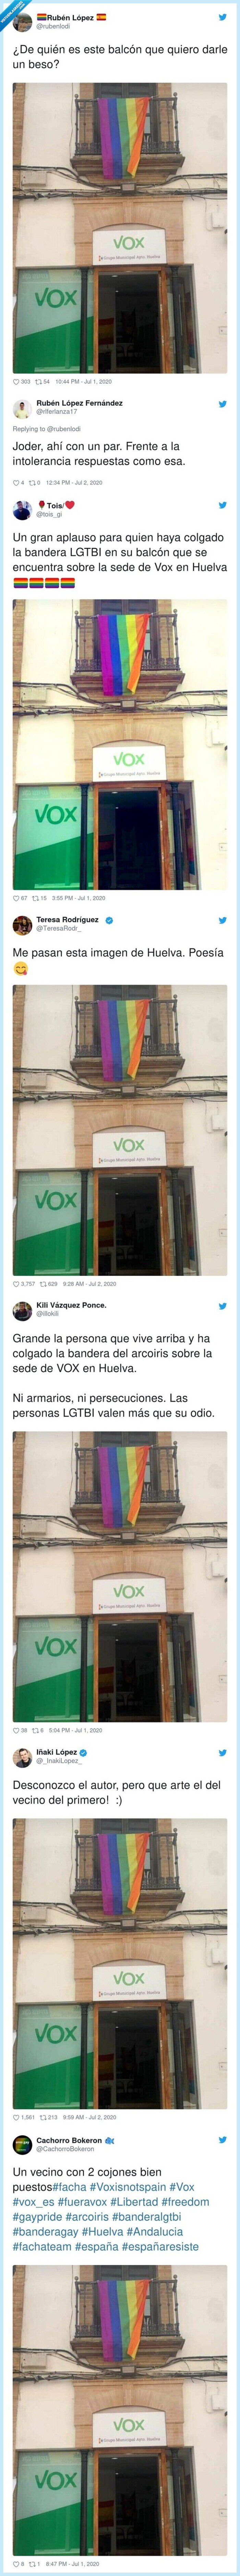 618739 - Un vecino de Huelva se gana a medio Twitter por lo que ha hecho encima de la sede de VOX